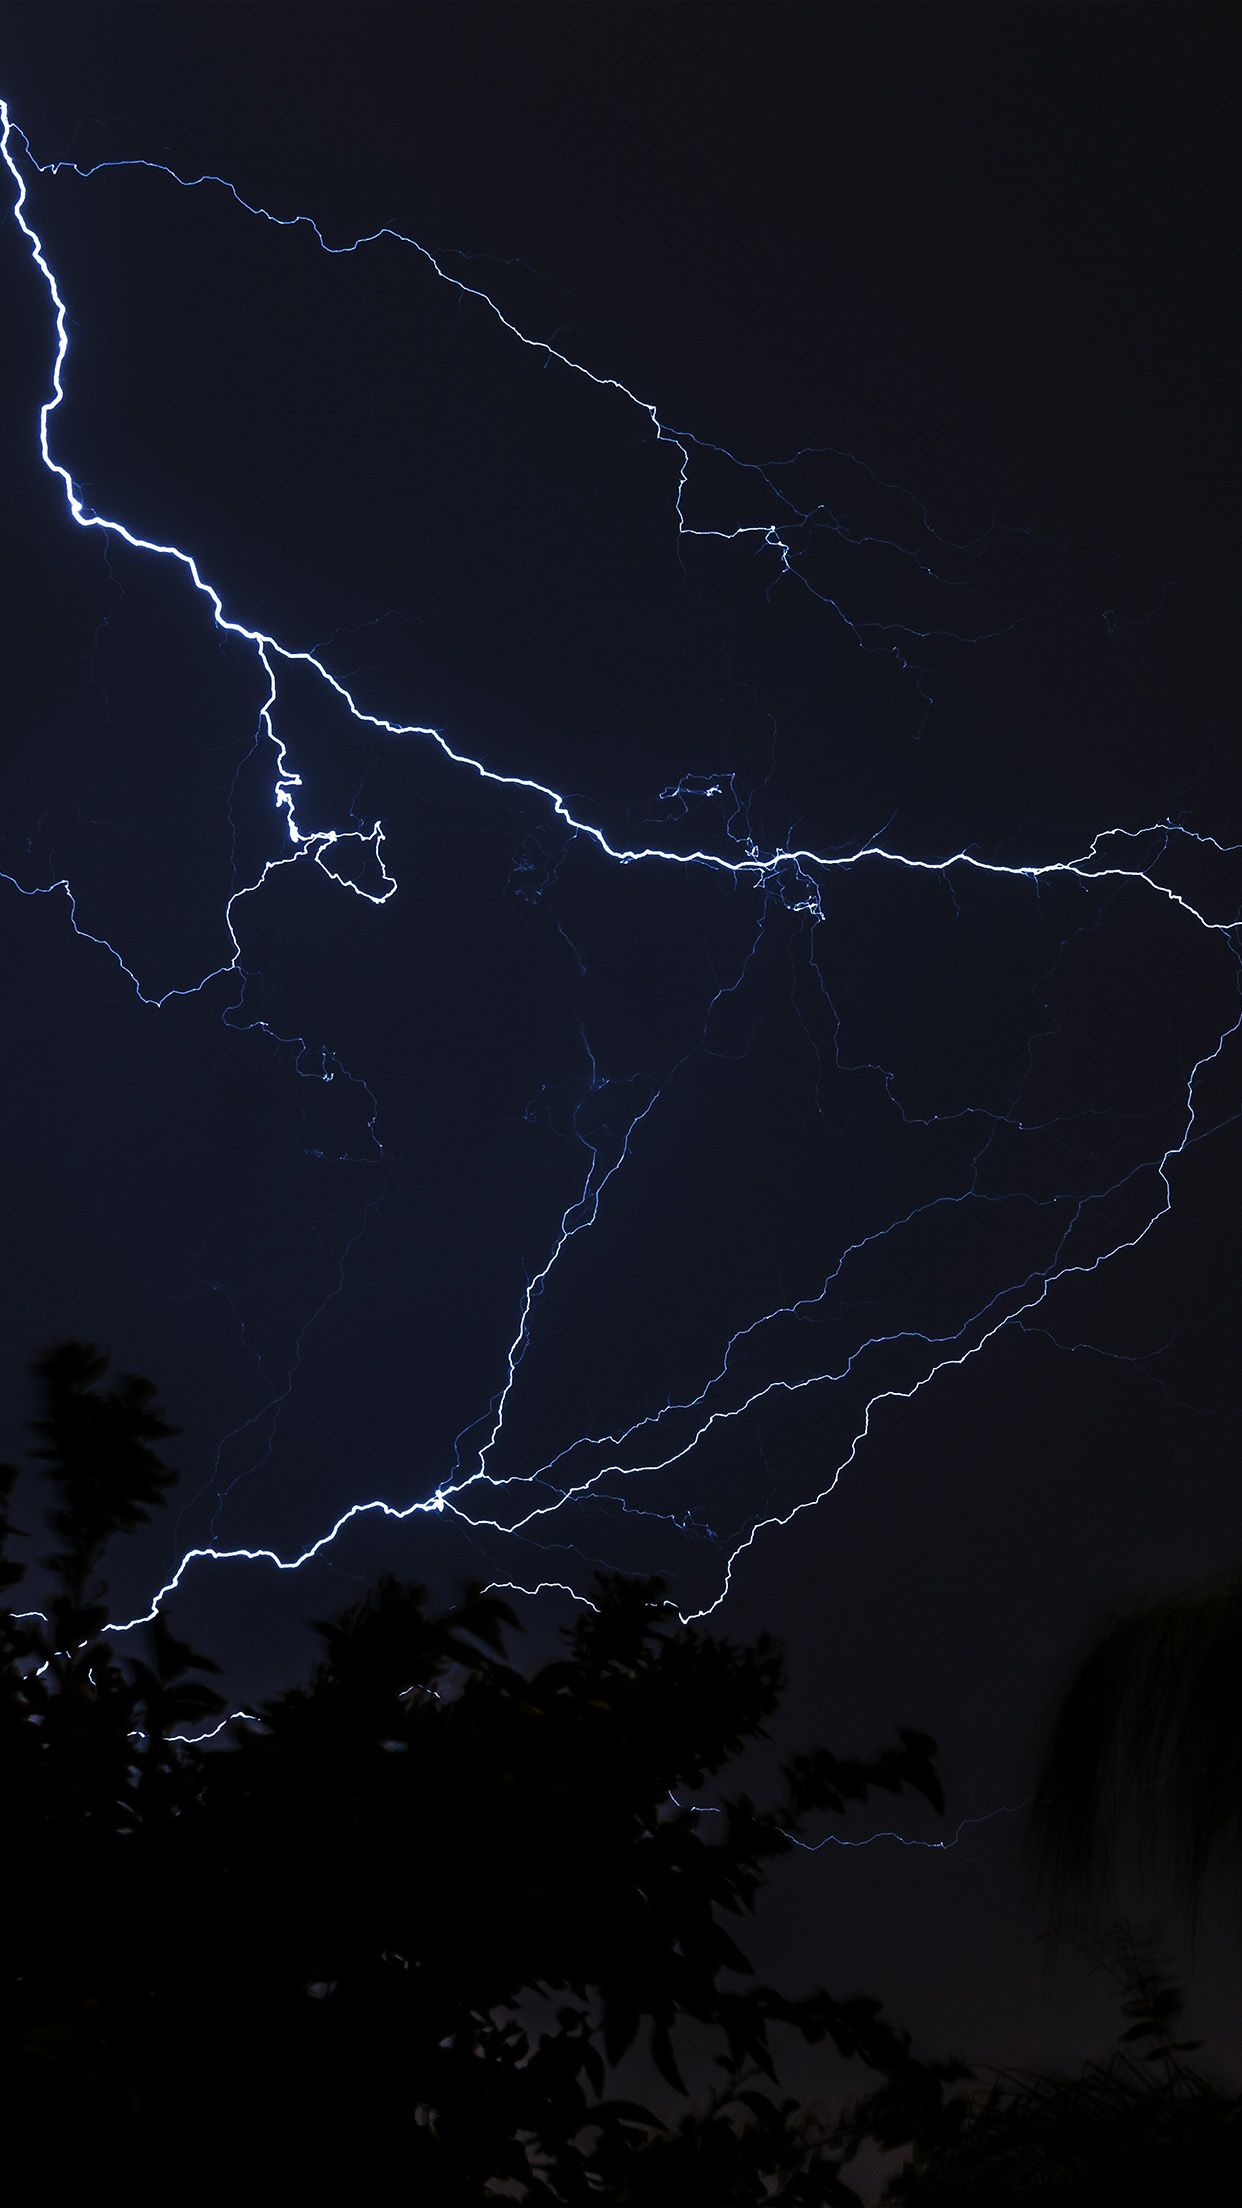 iPhone X wallpaper. thunder bolt sky night dark lightning